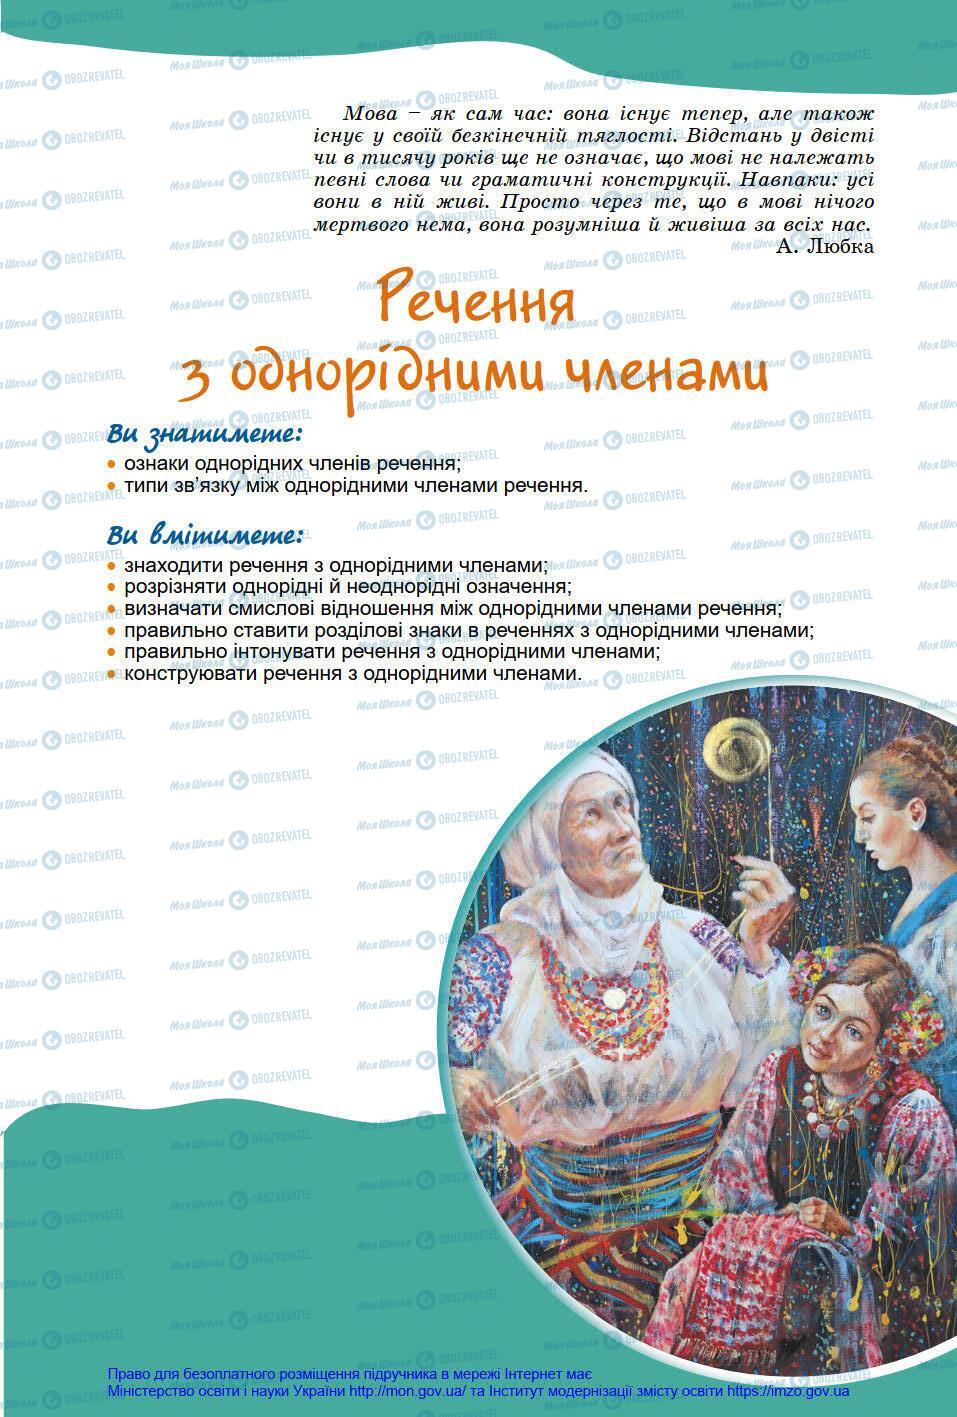 Підручники Українська мова 8 клас сторінка 101